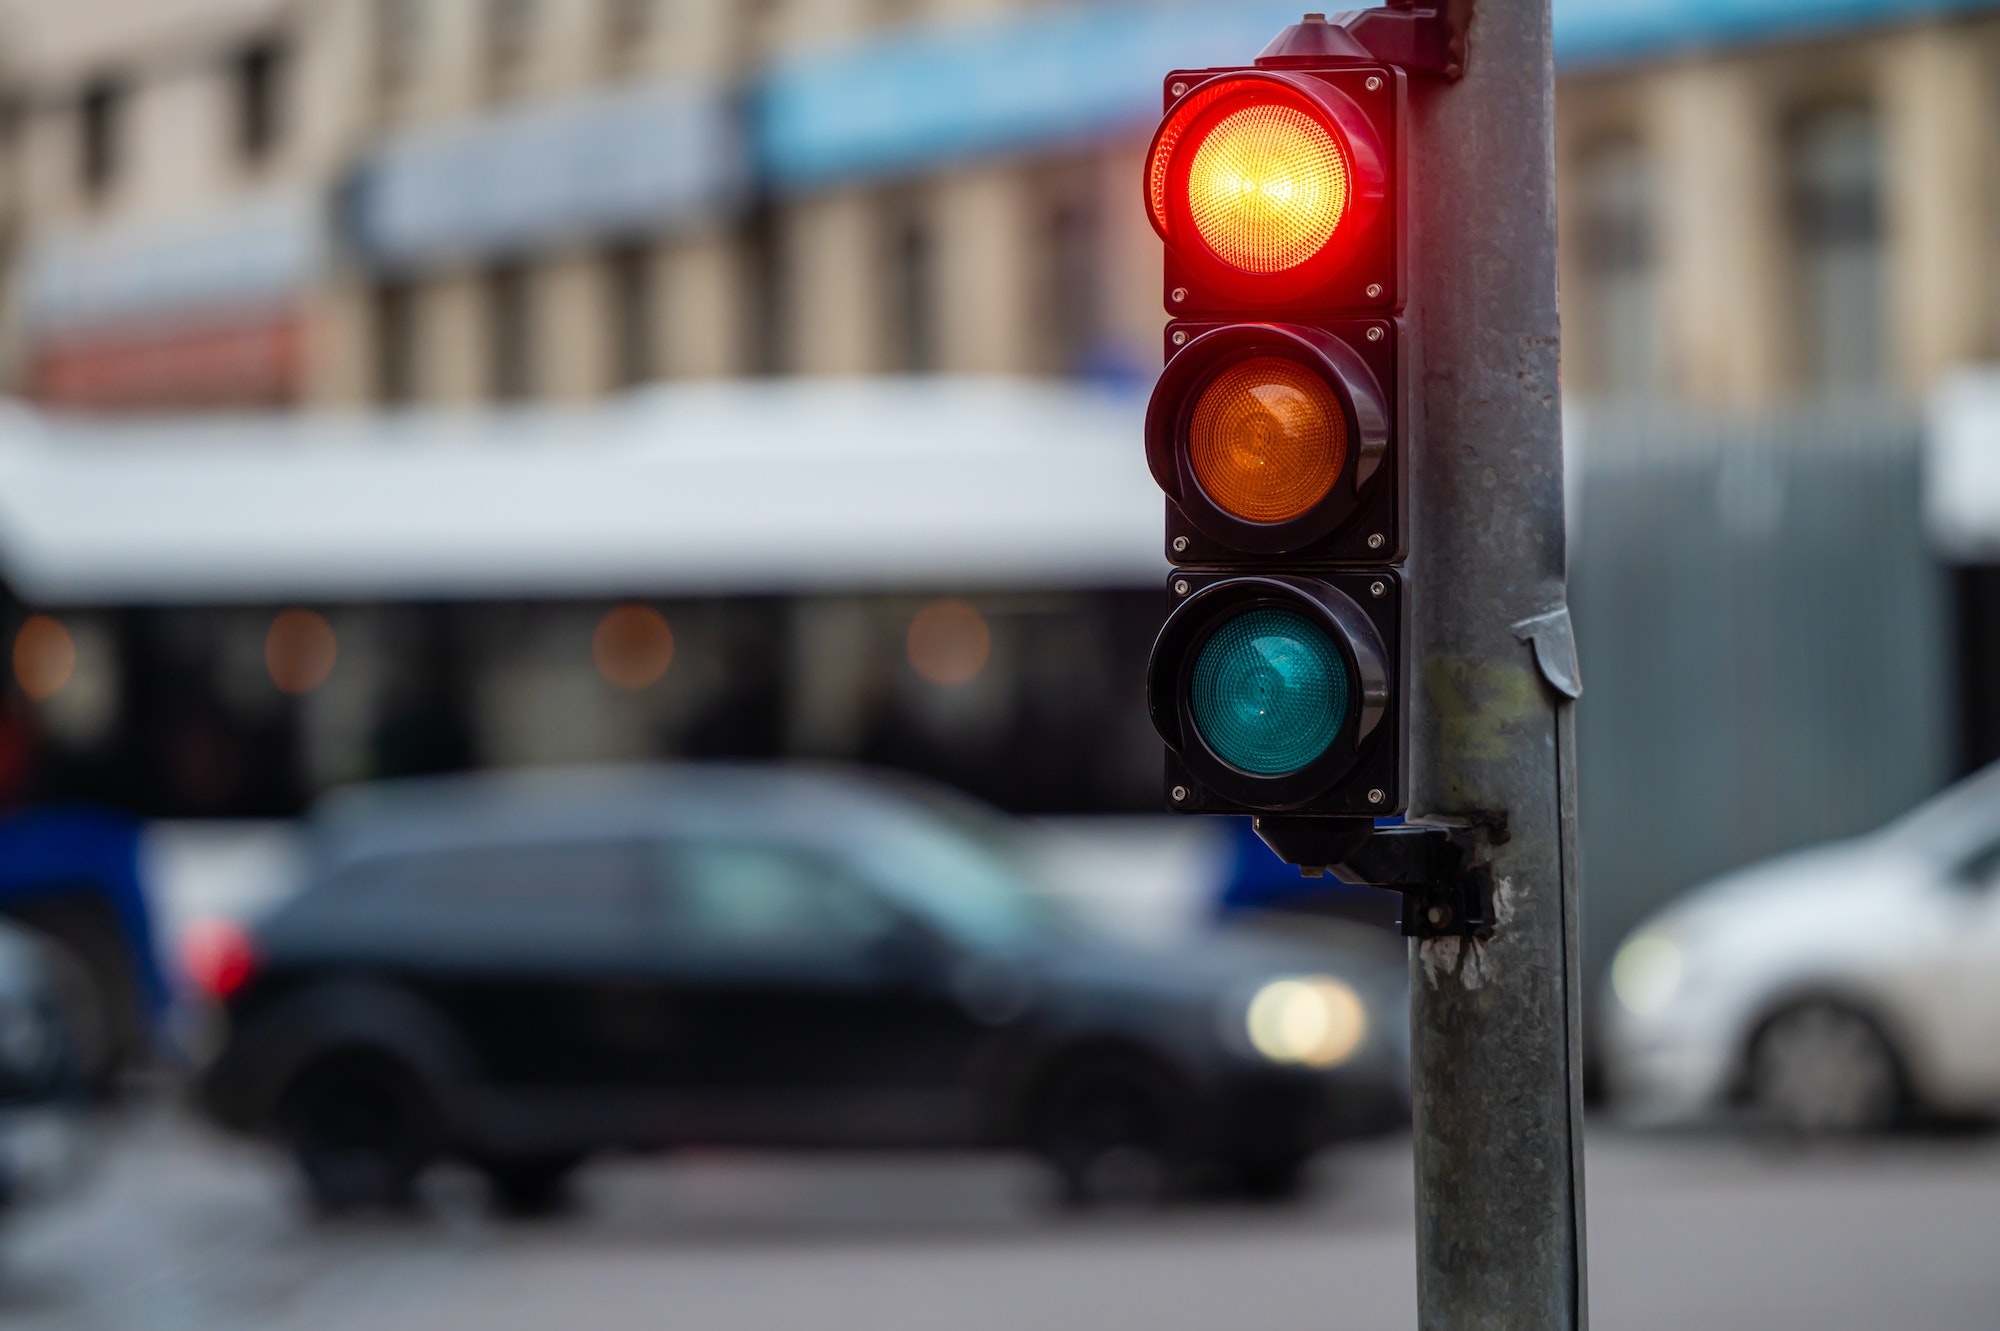 Habrá luz blanca extra en los semáforos para los coches autónomos